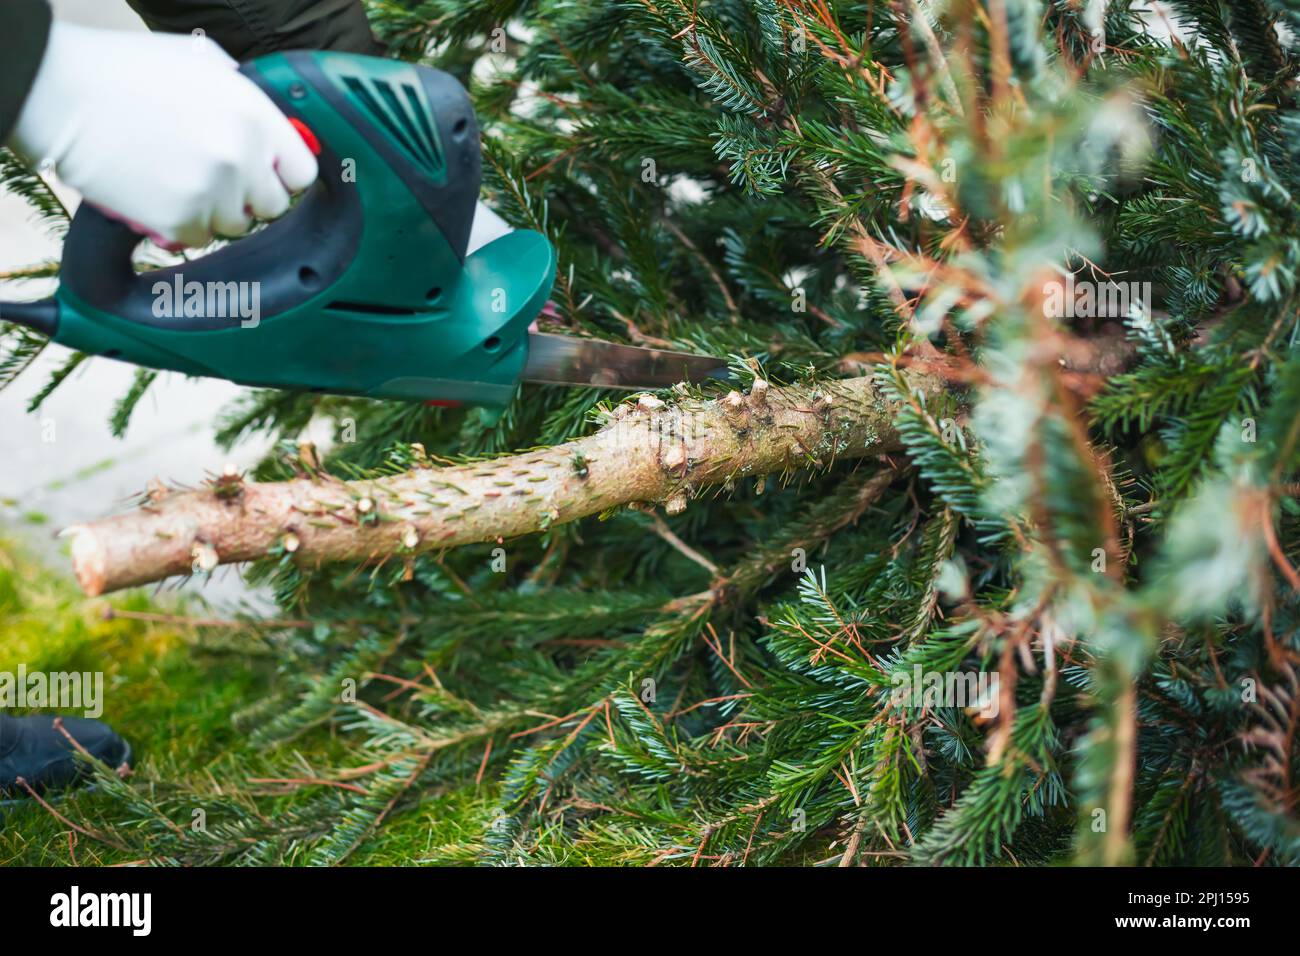 Gartenarbeit im Herbst und Winter. Ein Teenager sägt einen alten Weihnachtsbaum mit einer elektrischen Säge und schneidet Äste. Stockfoto